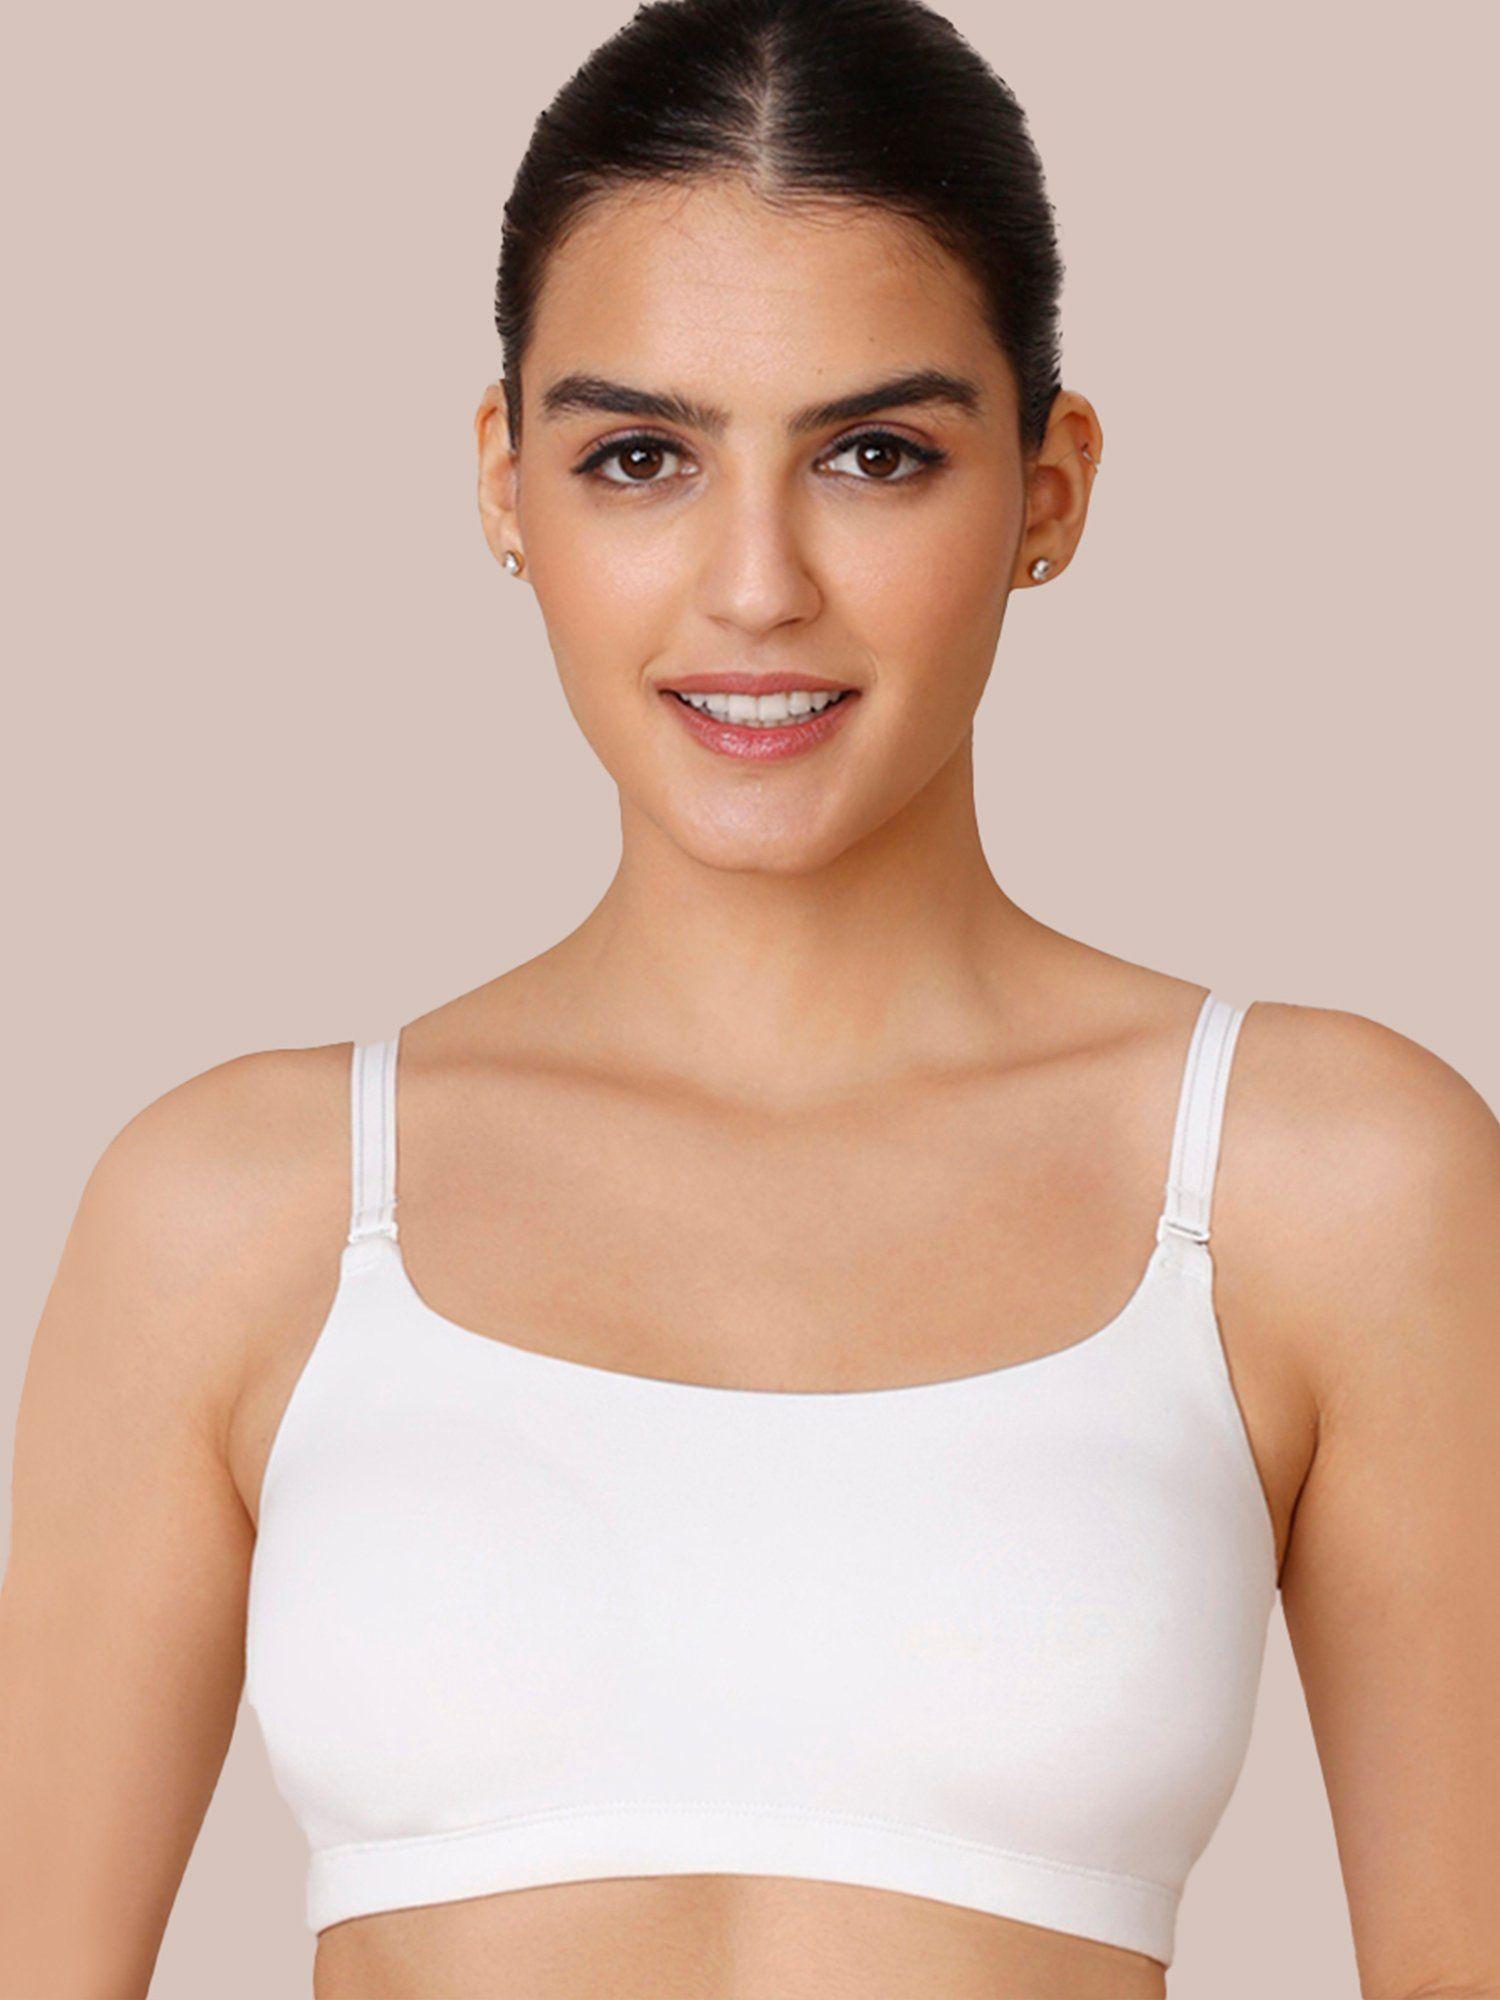 easy breezy slip on bra - bright white nyb165 - white